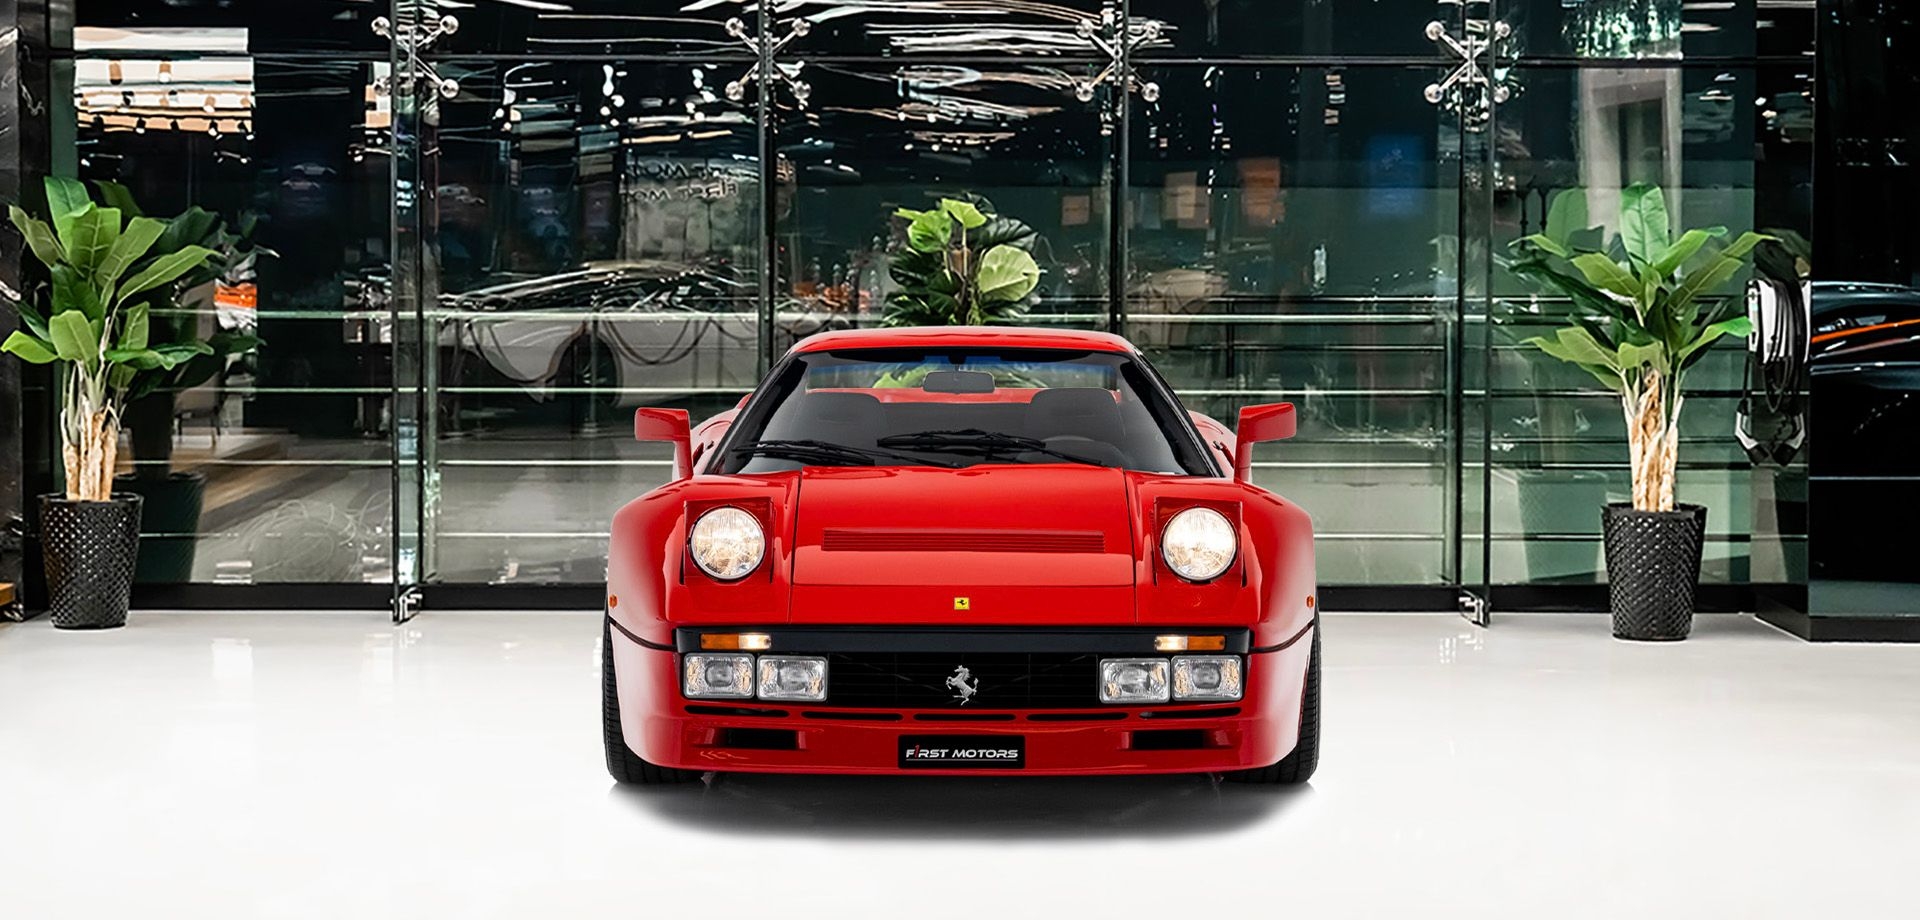 1985 Ferrari 288 gto | price | spec | review